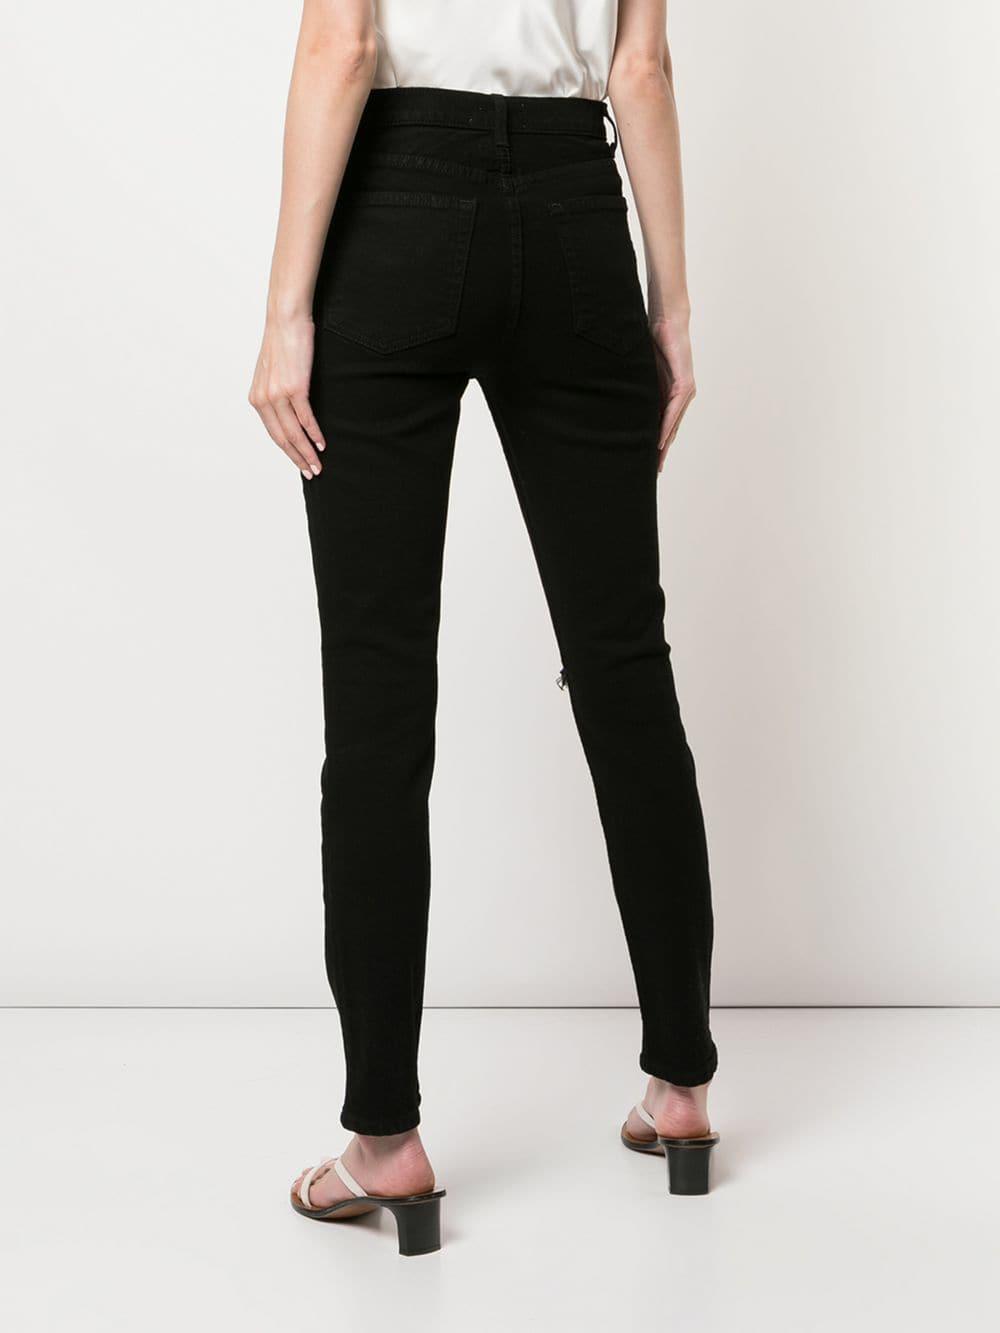 Reformation Denim Serena Jeans in Black - Lyst